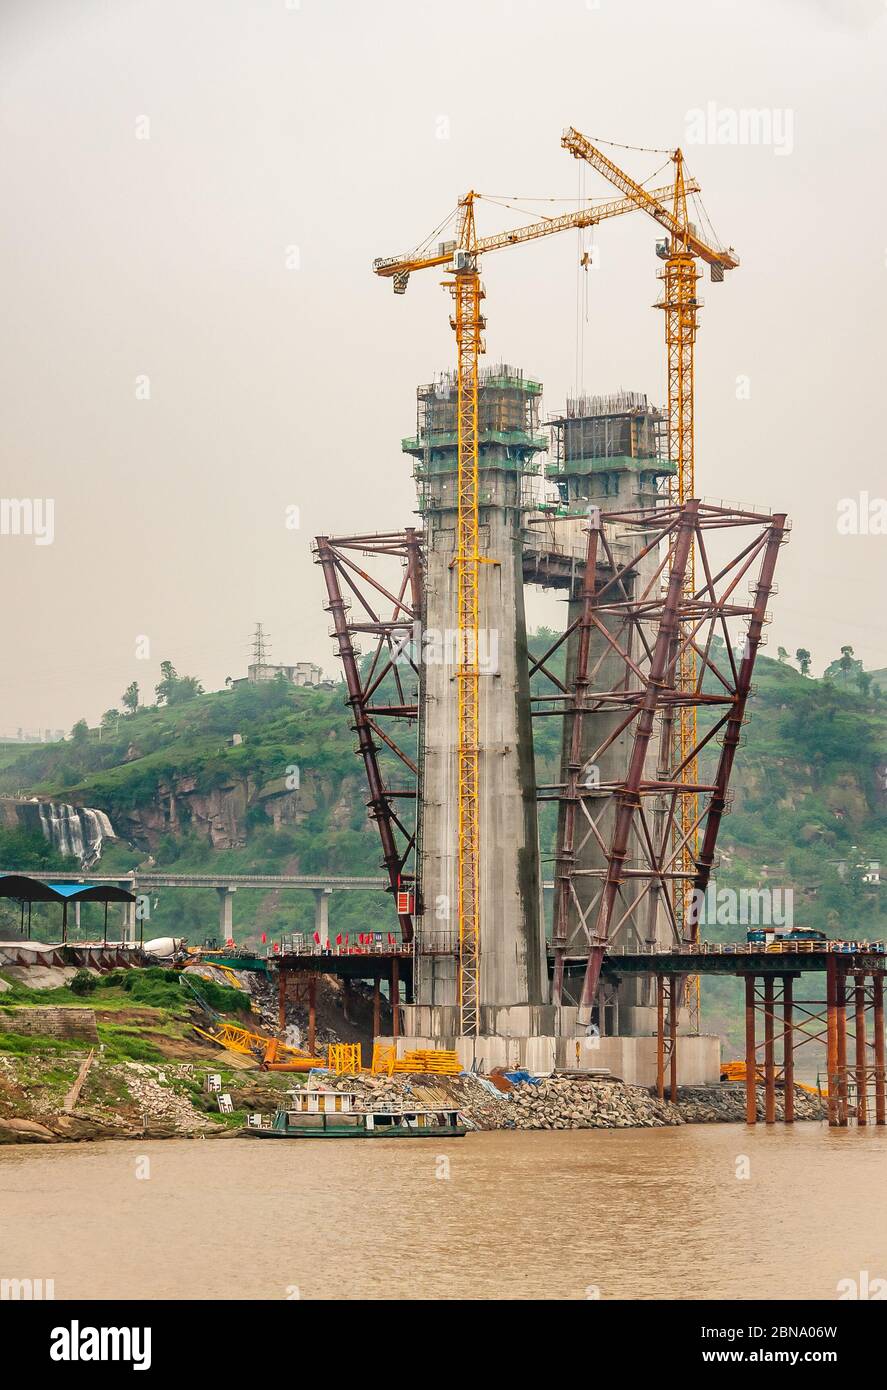 Fengdu, Chongqing, Cina - 8 maggio 2010: Fiume Yangtze. Primo piano di torre di sospensione in calcestruzzo per ponte in costruzione con 2 alte gru gialle ov Foto Stock